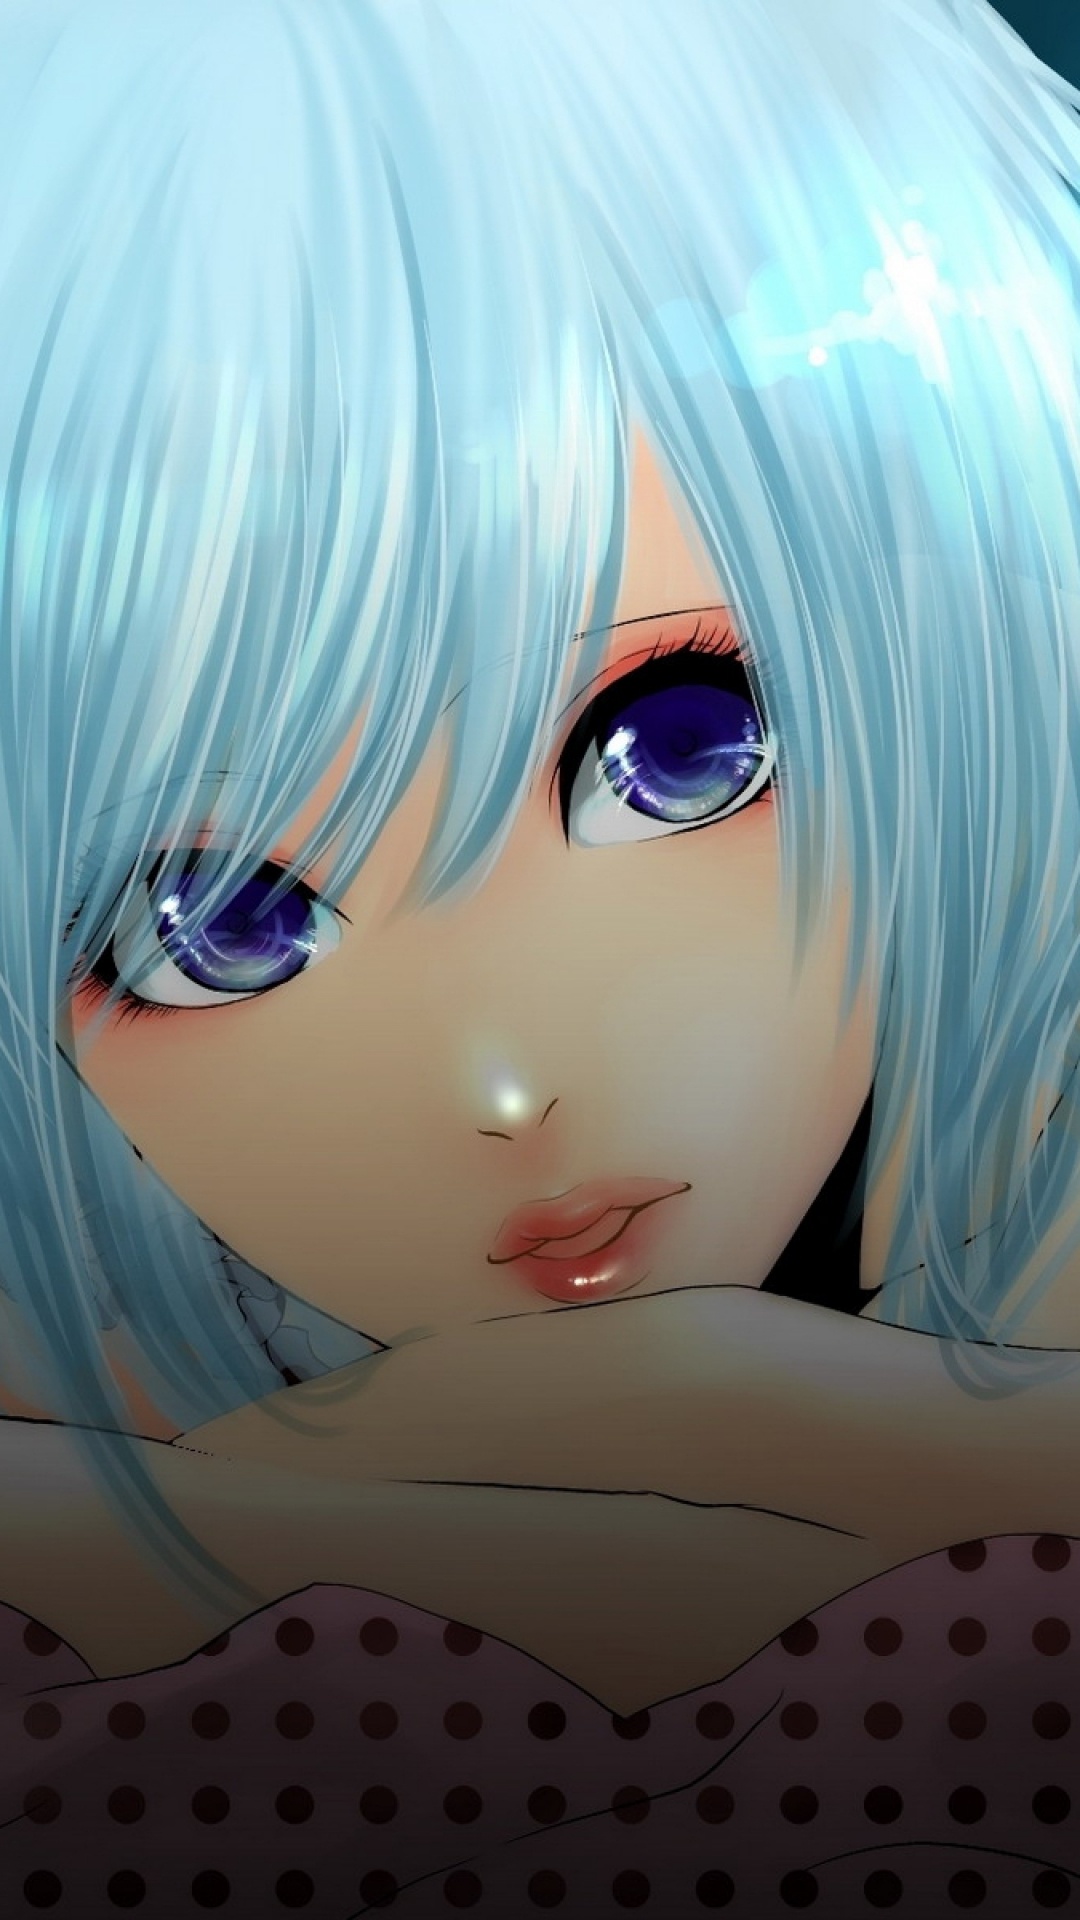 Personnage D'anime Féminin Aux Cheveux Bleus. Wallpaper in 1080x1920 Resolution